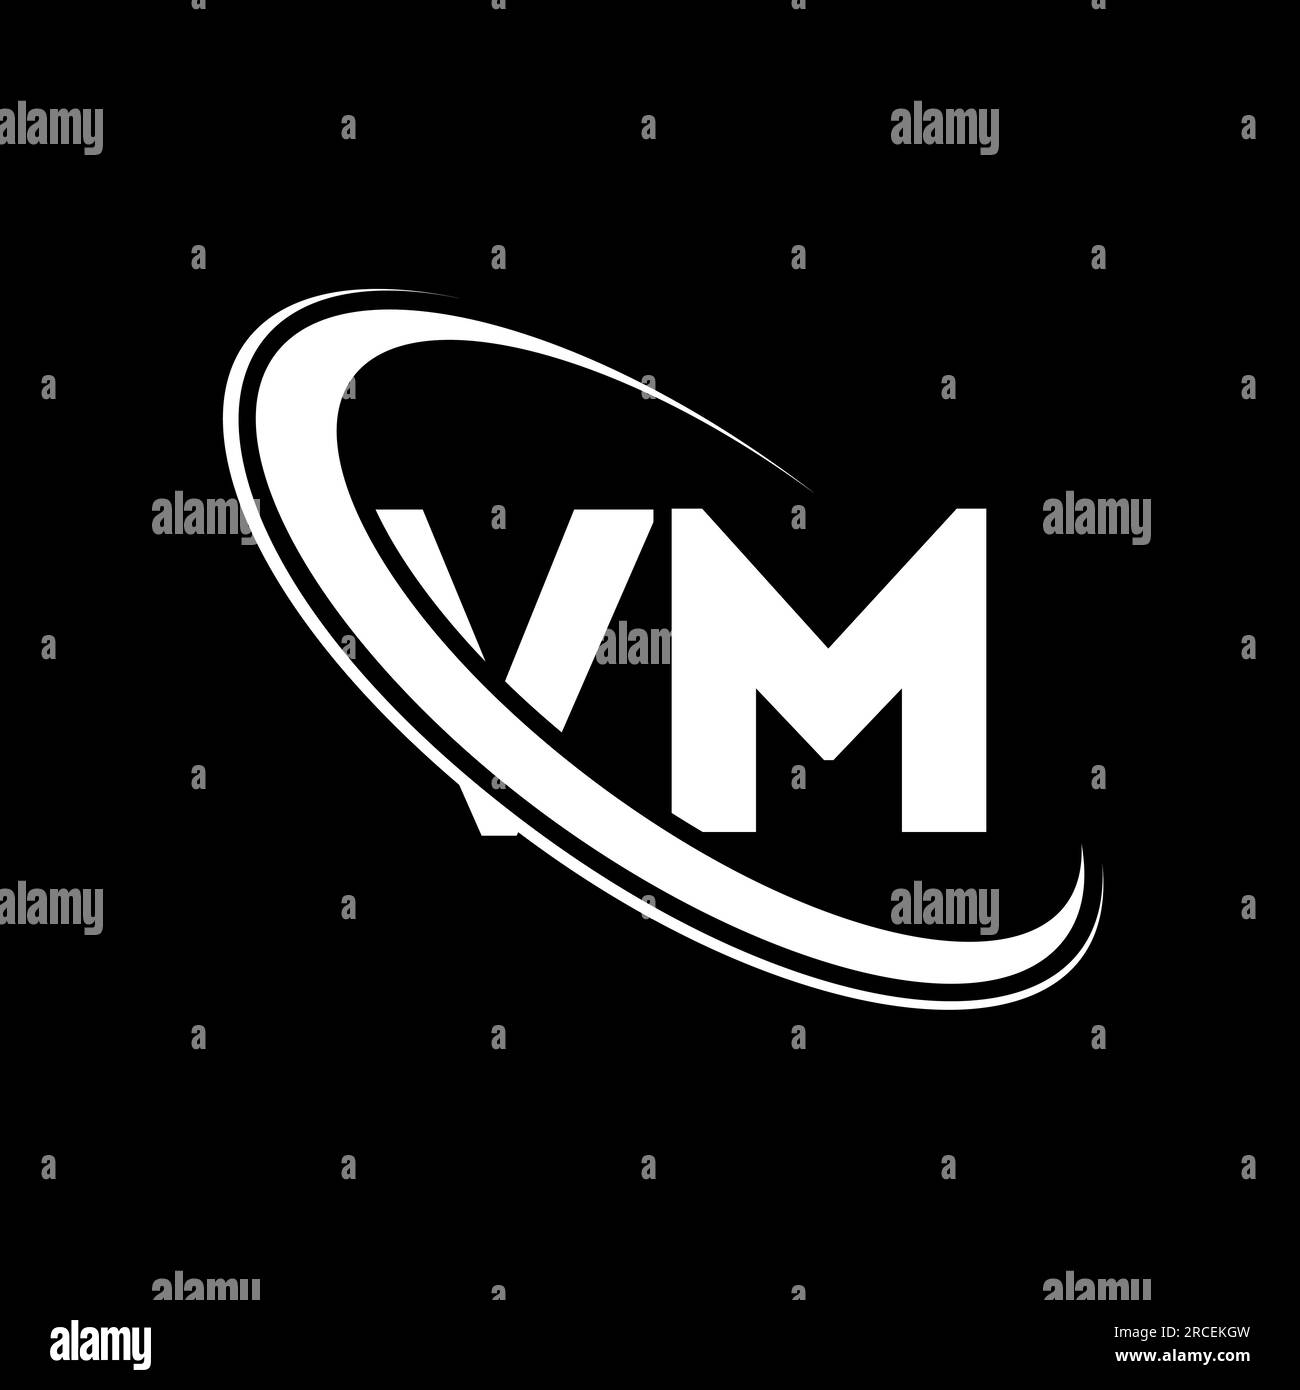 VM logo. V M design. White VM letter. VM/V M letter logo design. Initial letter VM linked circle uppercase monogram logo. Stock Vector